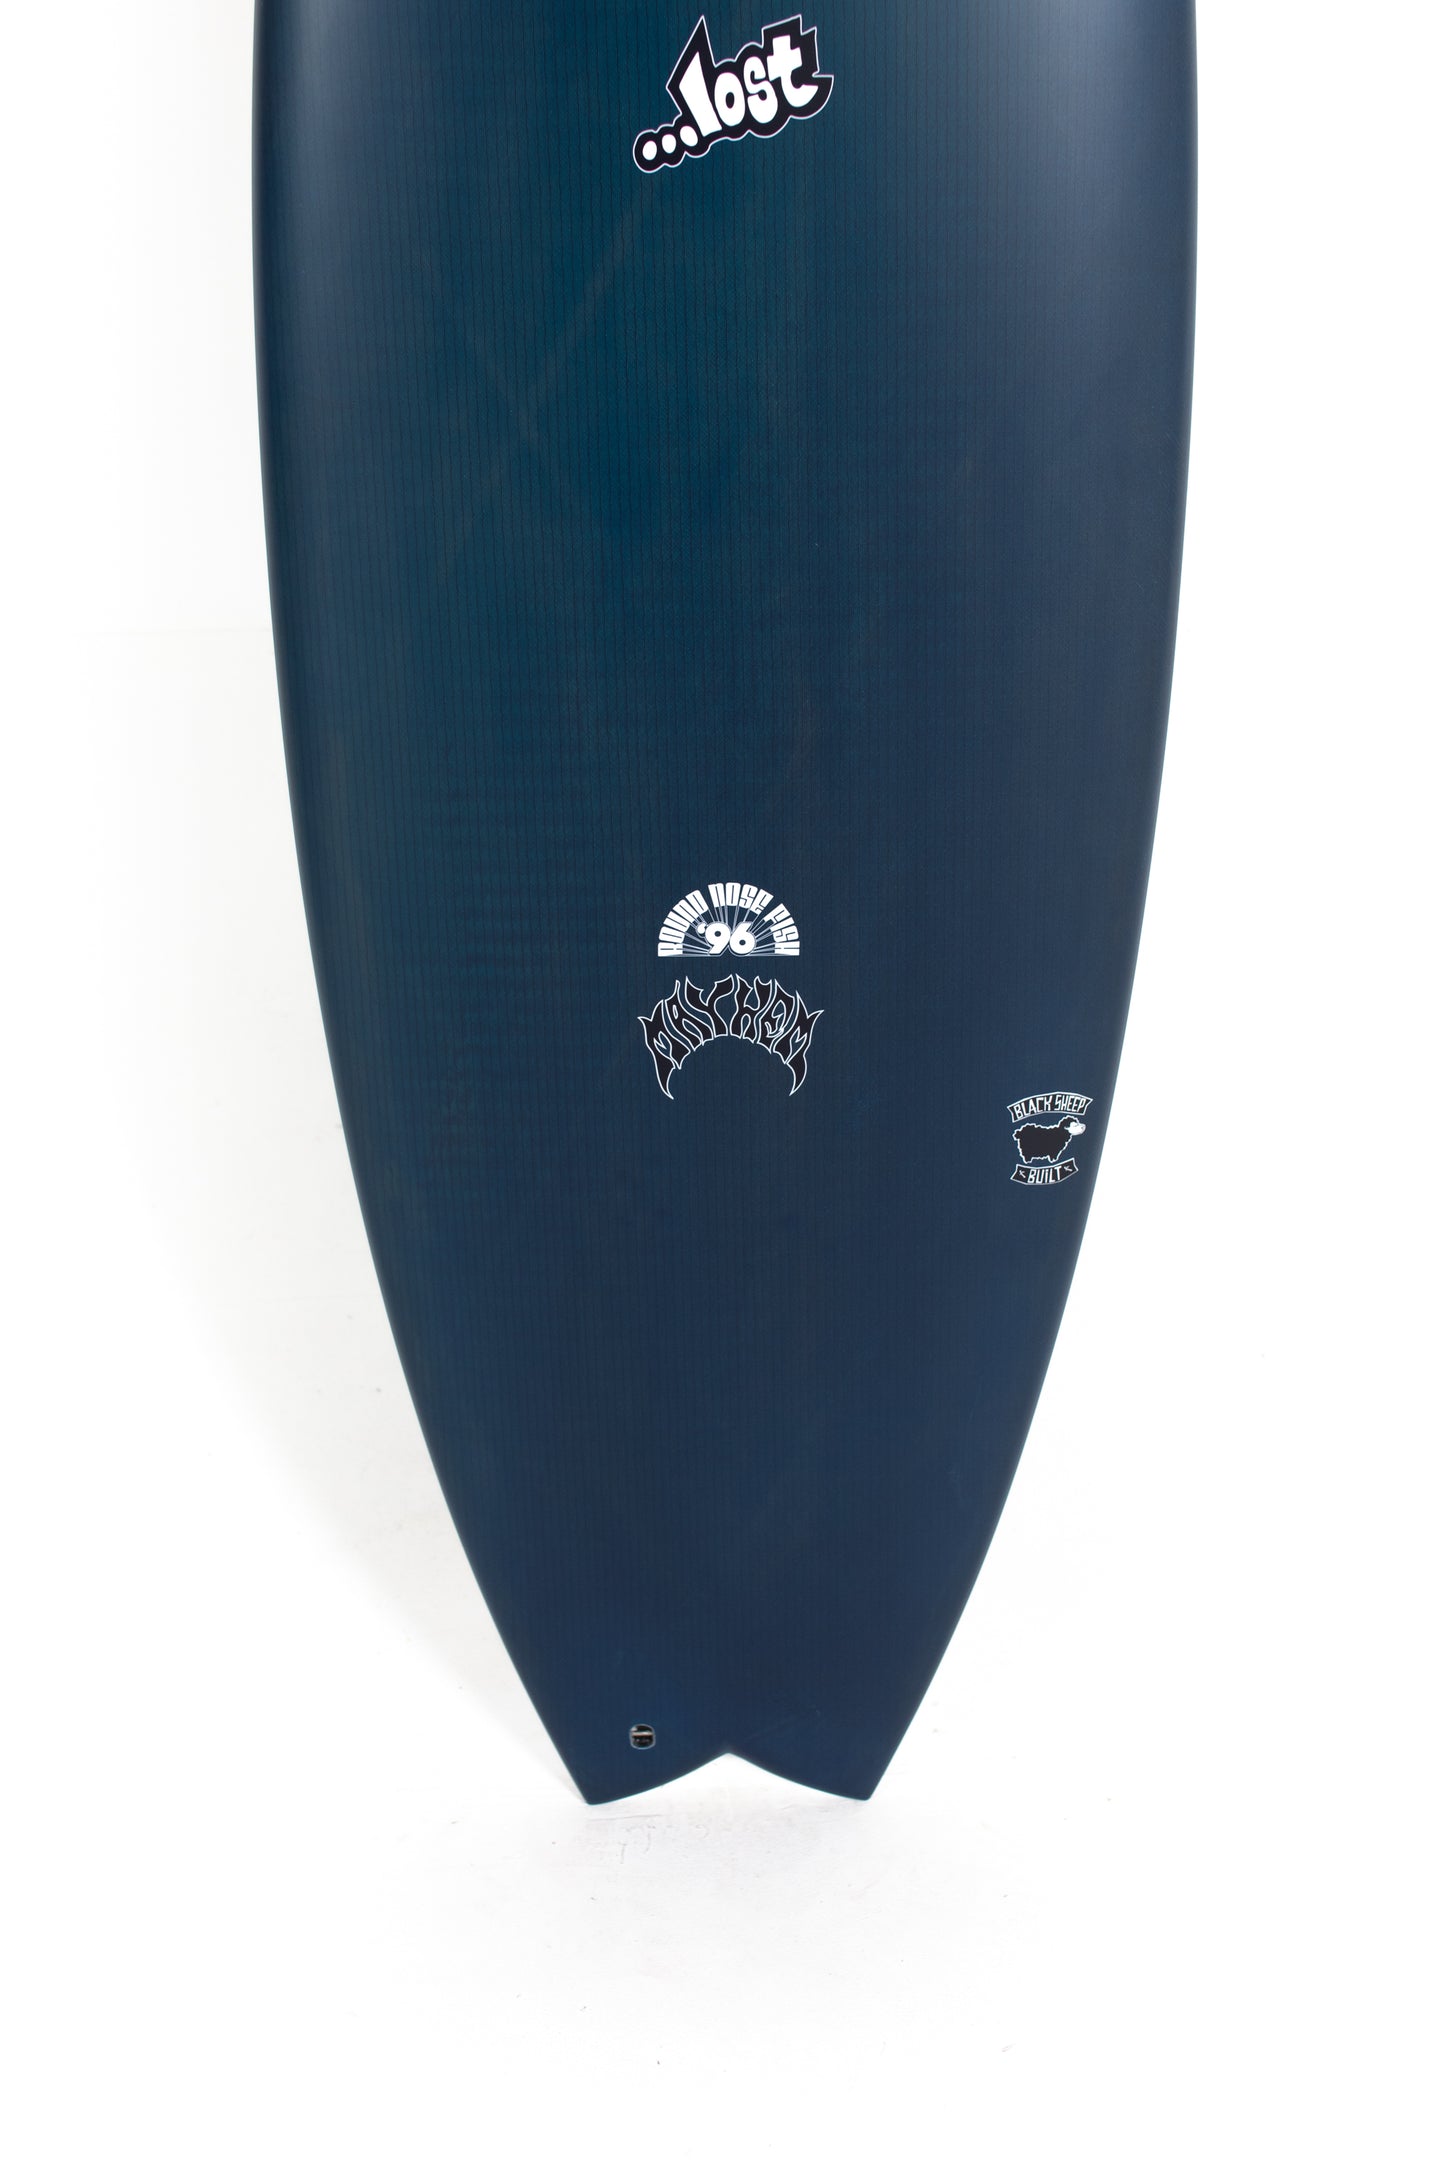 Lost Surfboard | RNF 96 by Matt Biolos at PUKAS SURF SHOP